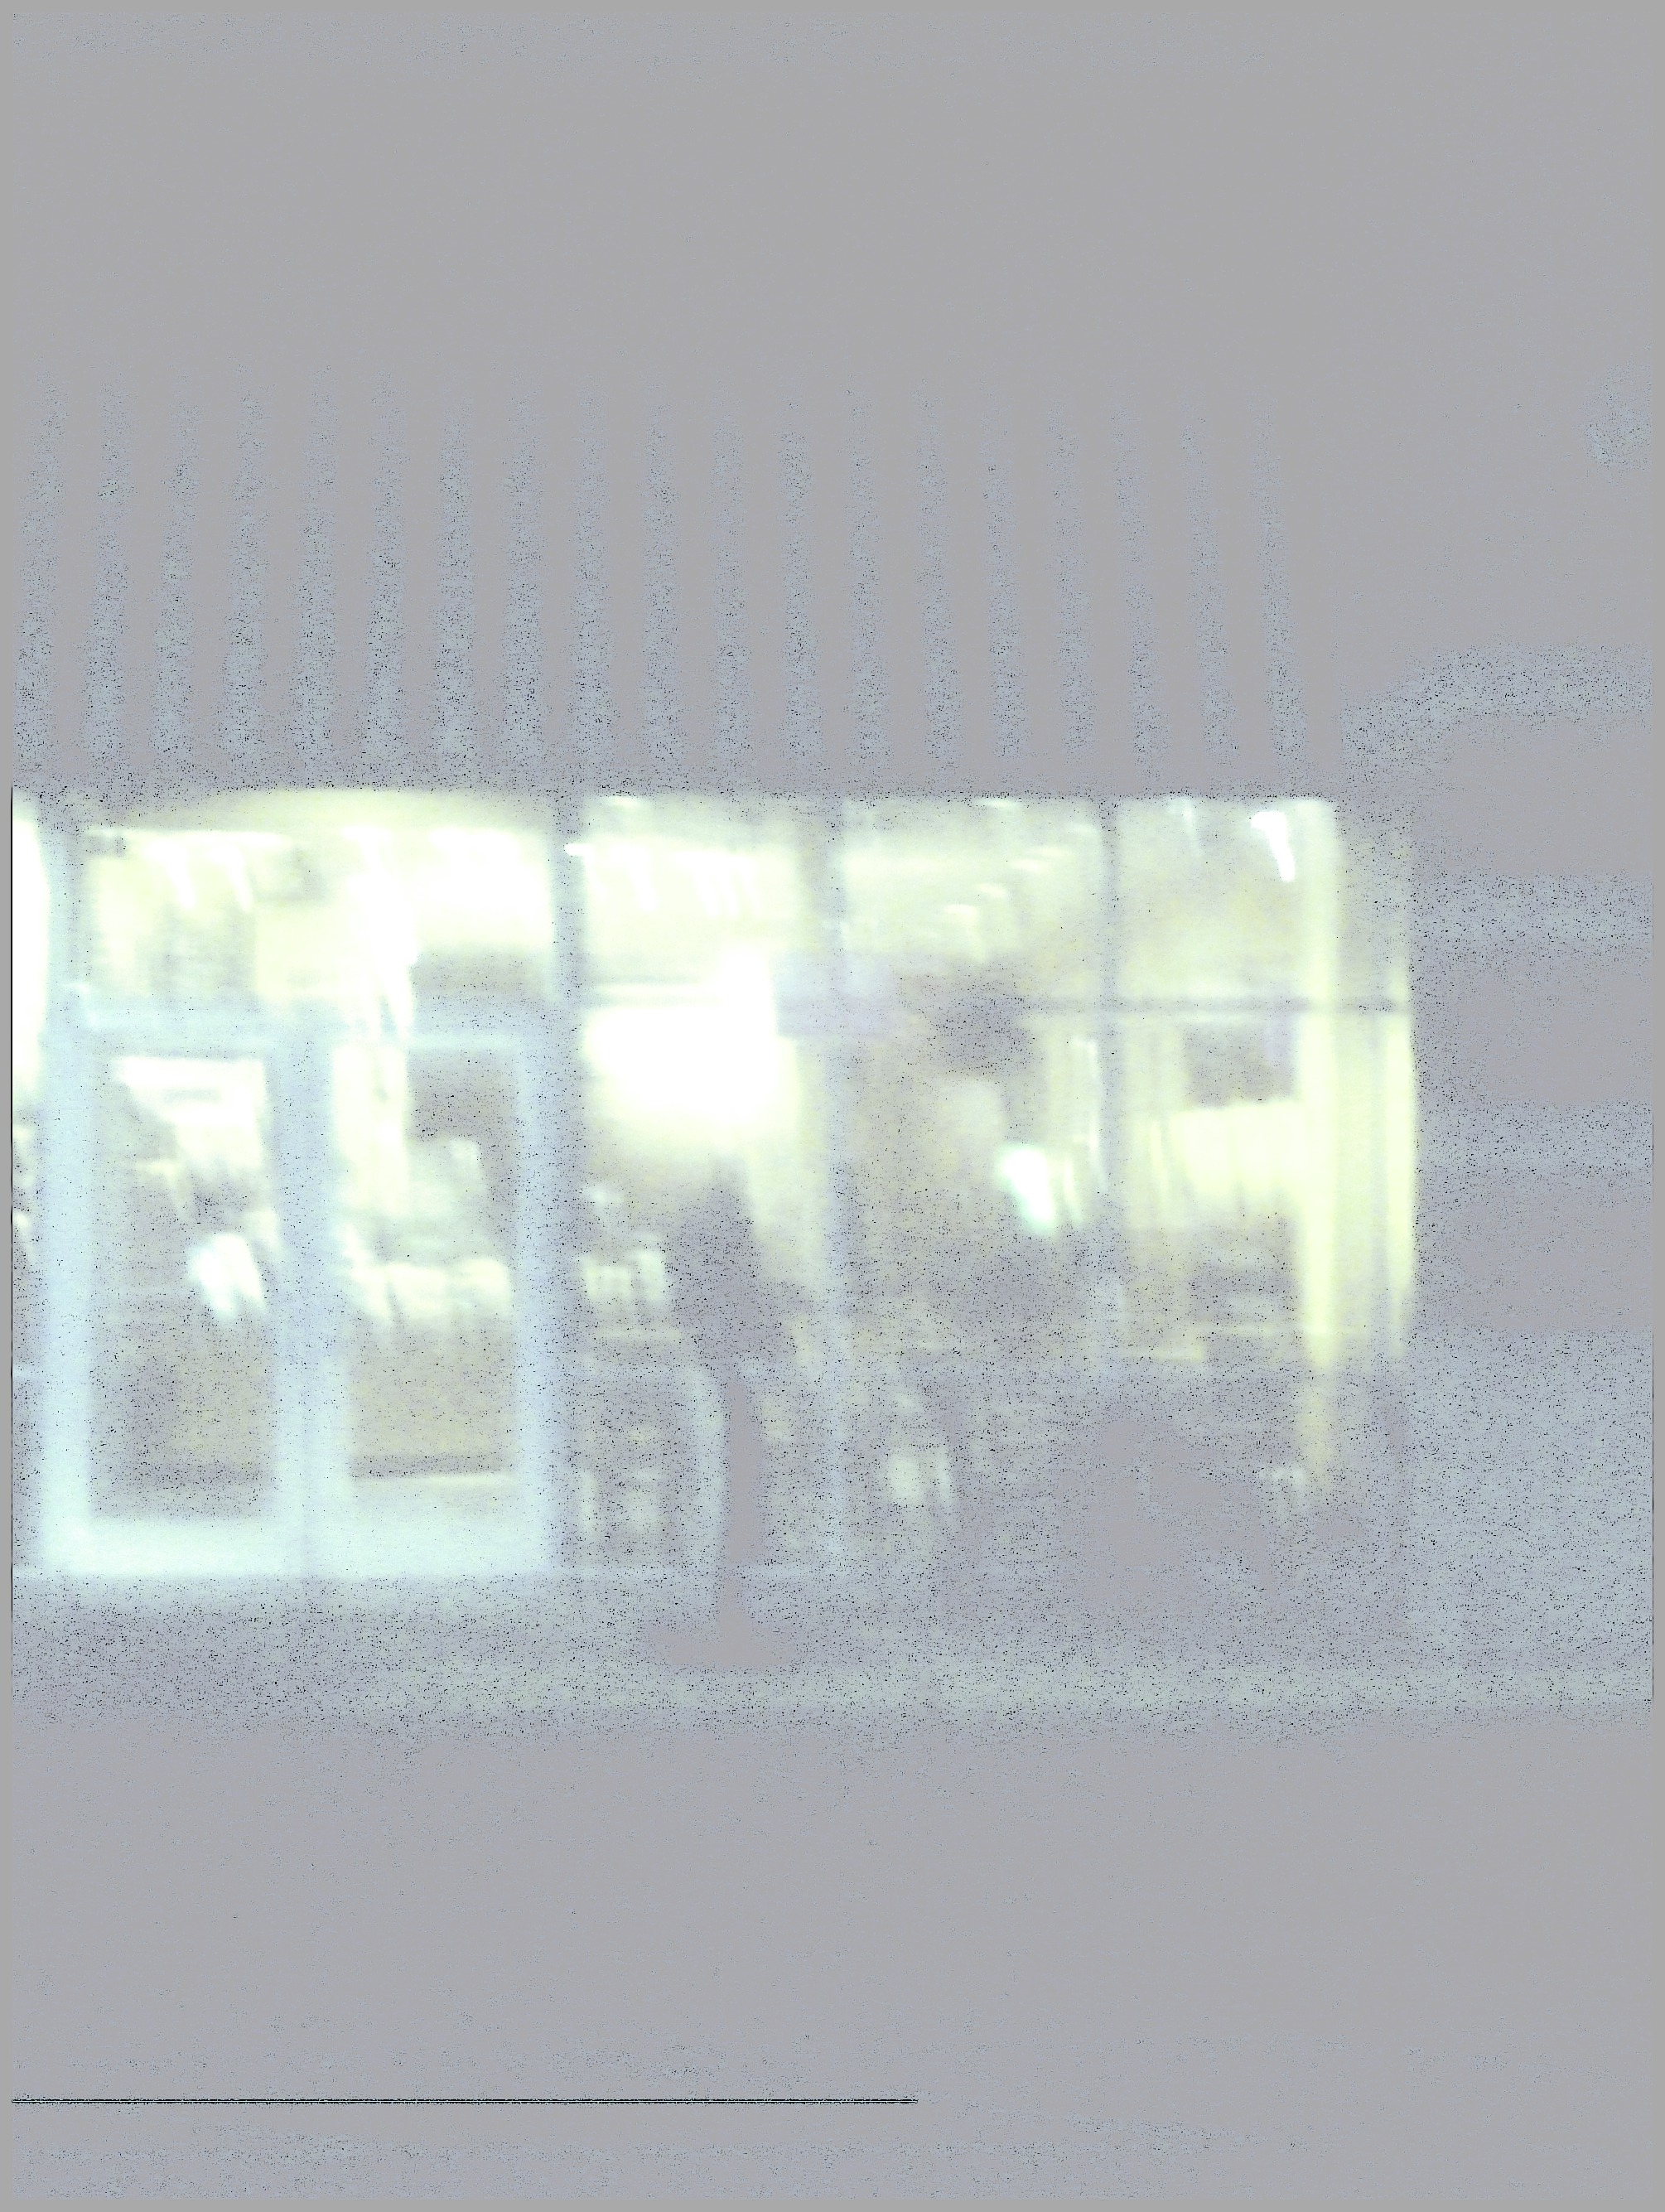 Man in Cafe Window feb 18